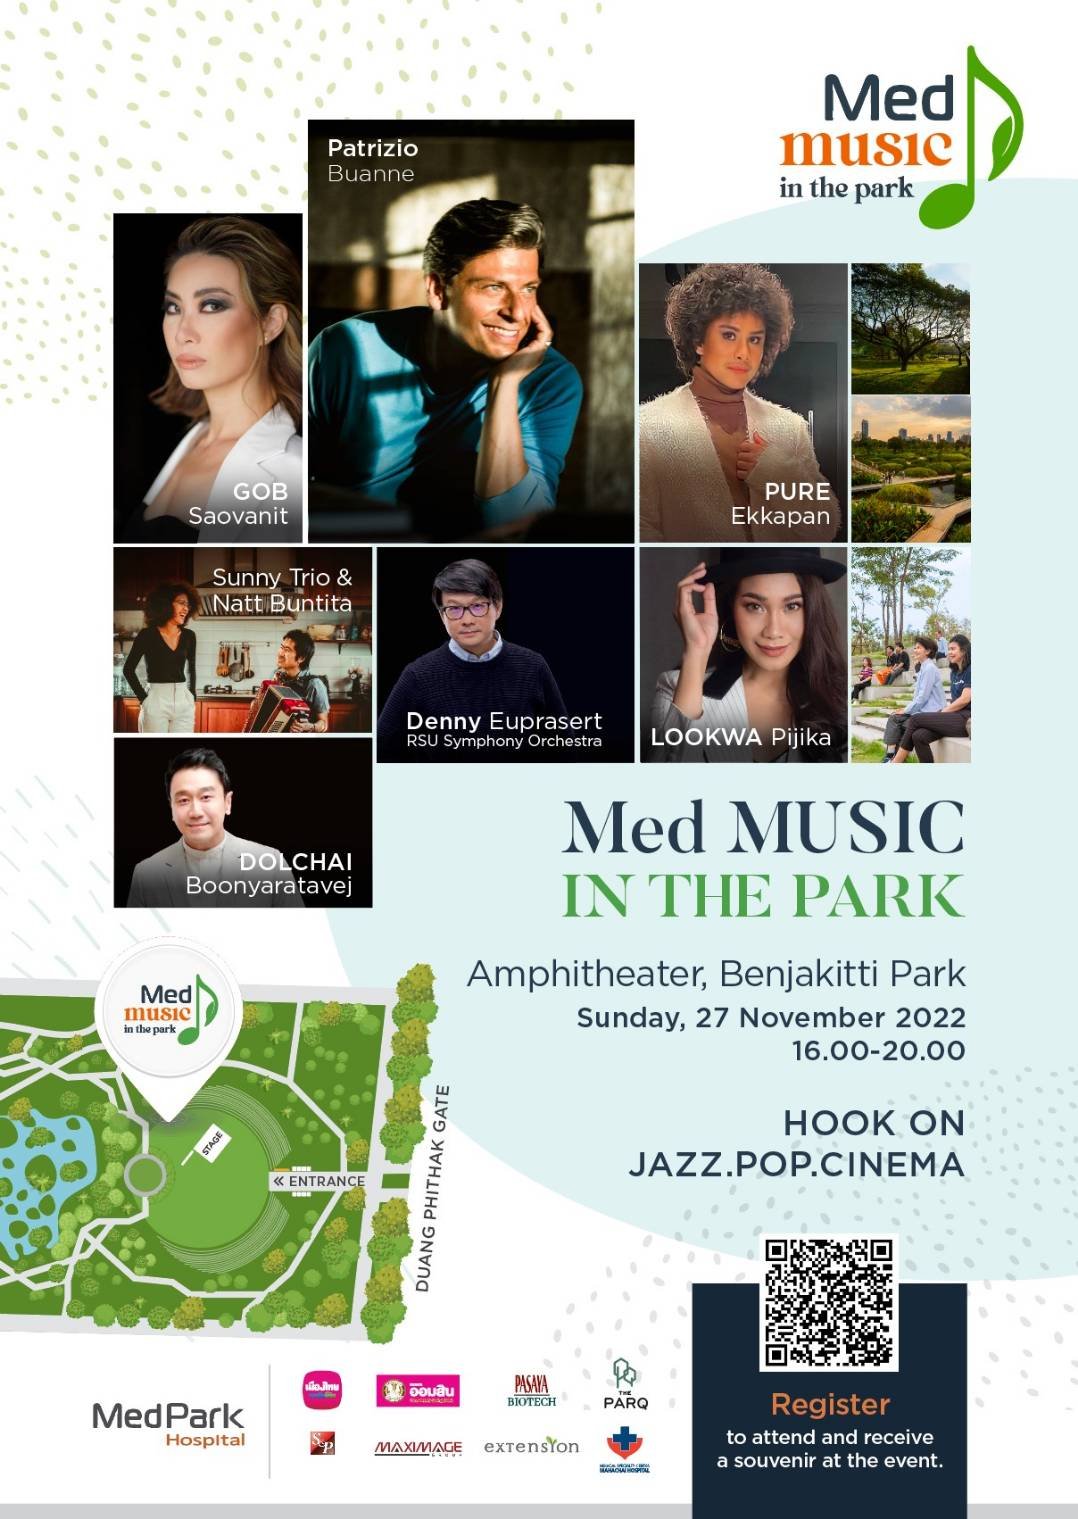 รพ.เมดพาร์ค มอบความสุขครั้งใหญ่ ด้วย “Med Music in the Park” ต้อนรับ เทศกาล ปีใหม่แก่ชาวกรุงเทพมหานคร จัดเต็มทั้งศิลปินไทยและสากลพร้อม RSU Symphony Orchestra